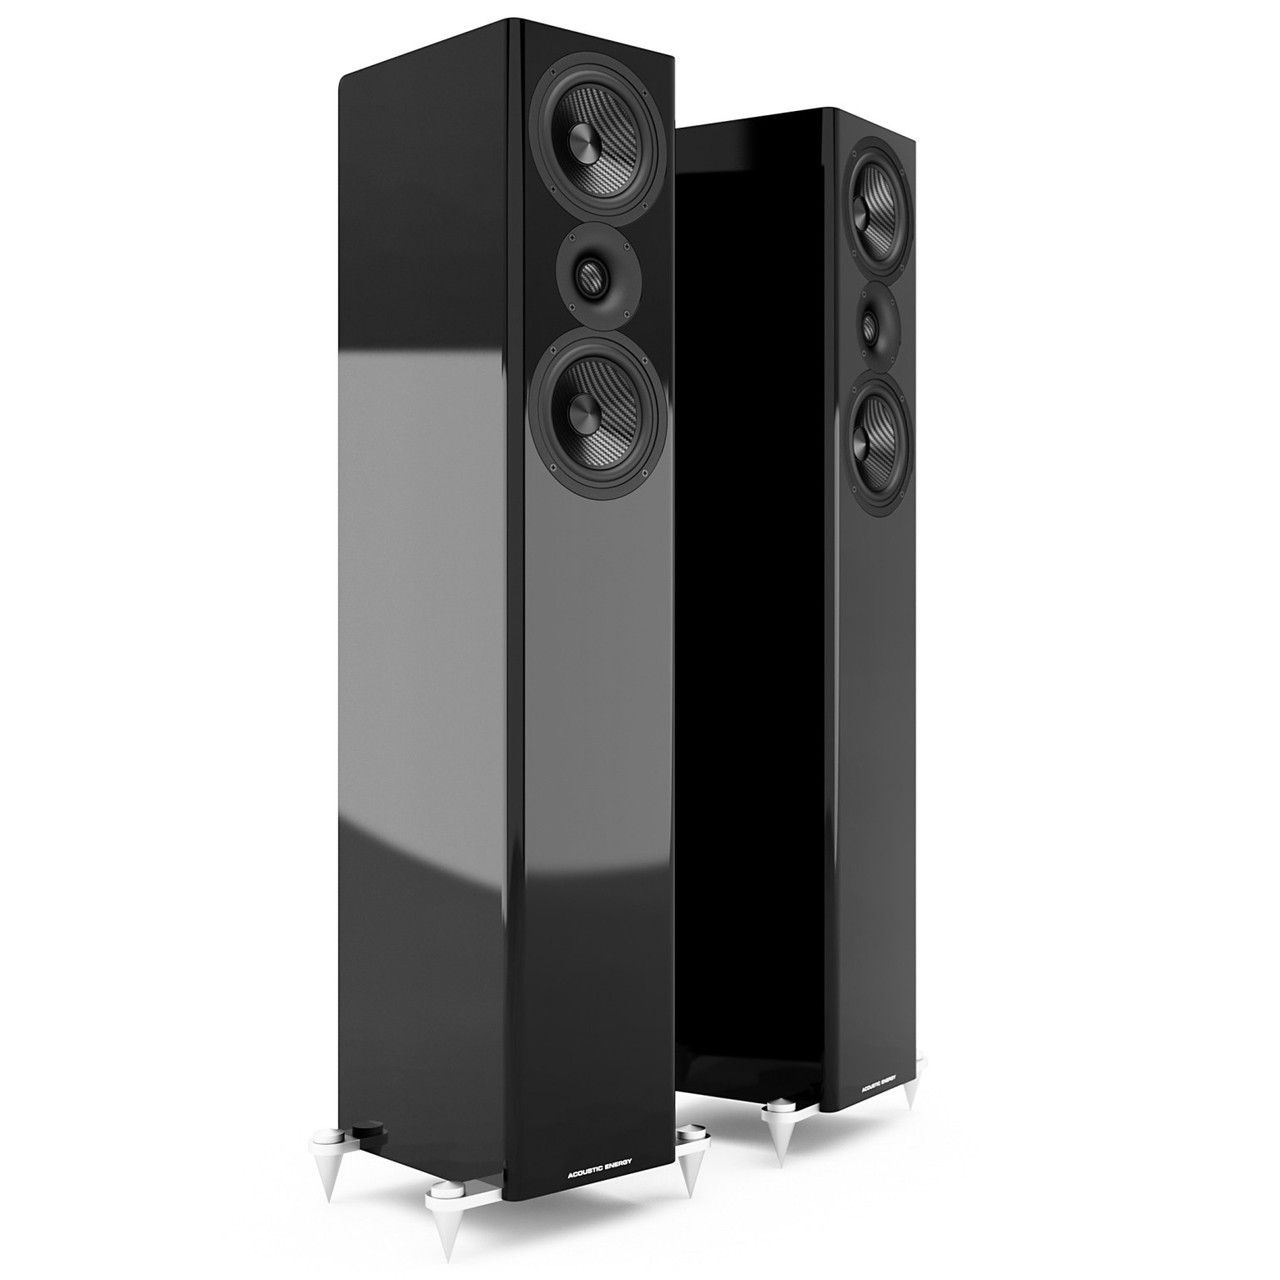 Acoustic Energy AE509 speakers